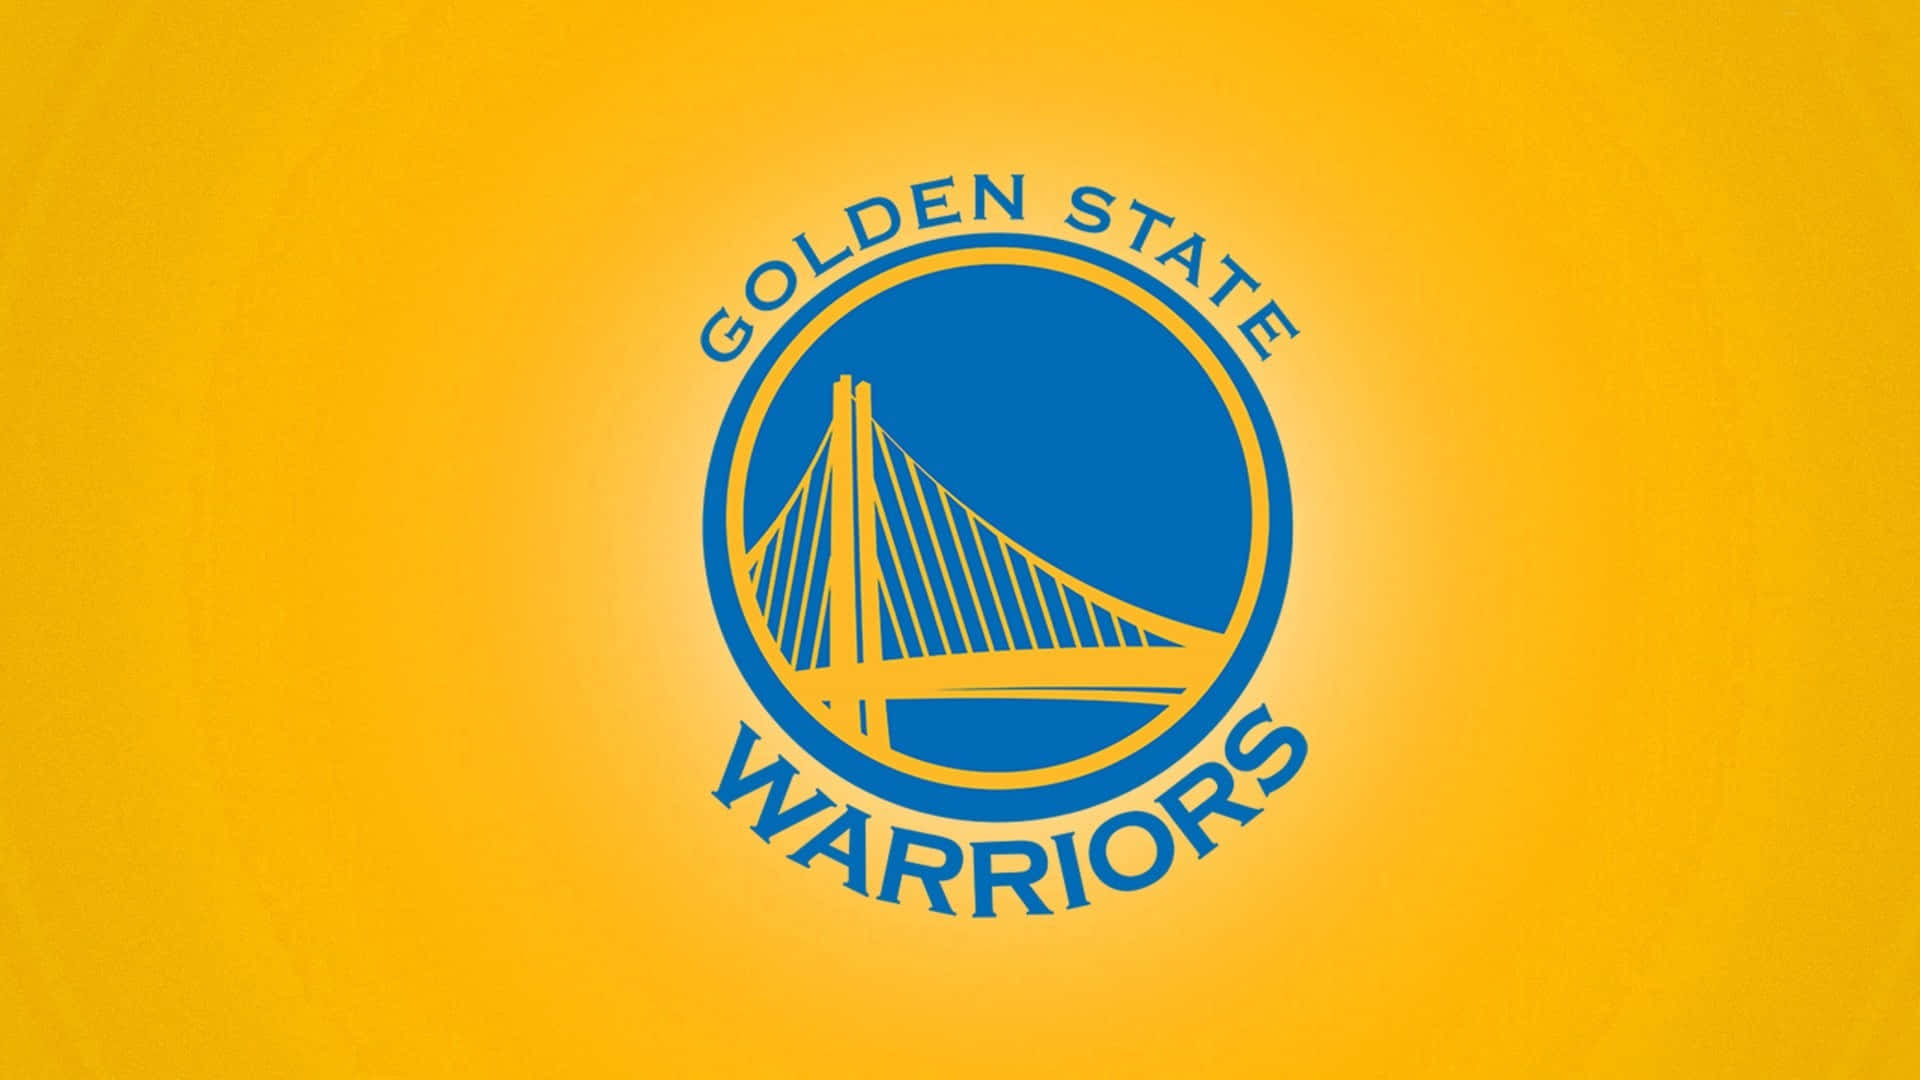 Visaditt Stöd För Golden State Warriors Med Deras Officiella Logotyp På Din Dator- Eller Mobilskärms Bakgrundsbild. Wallpaper